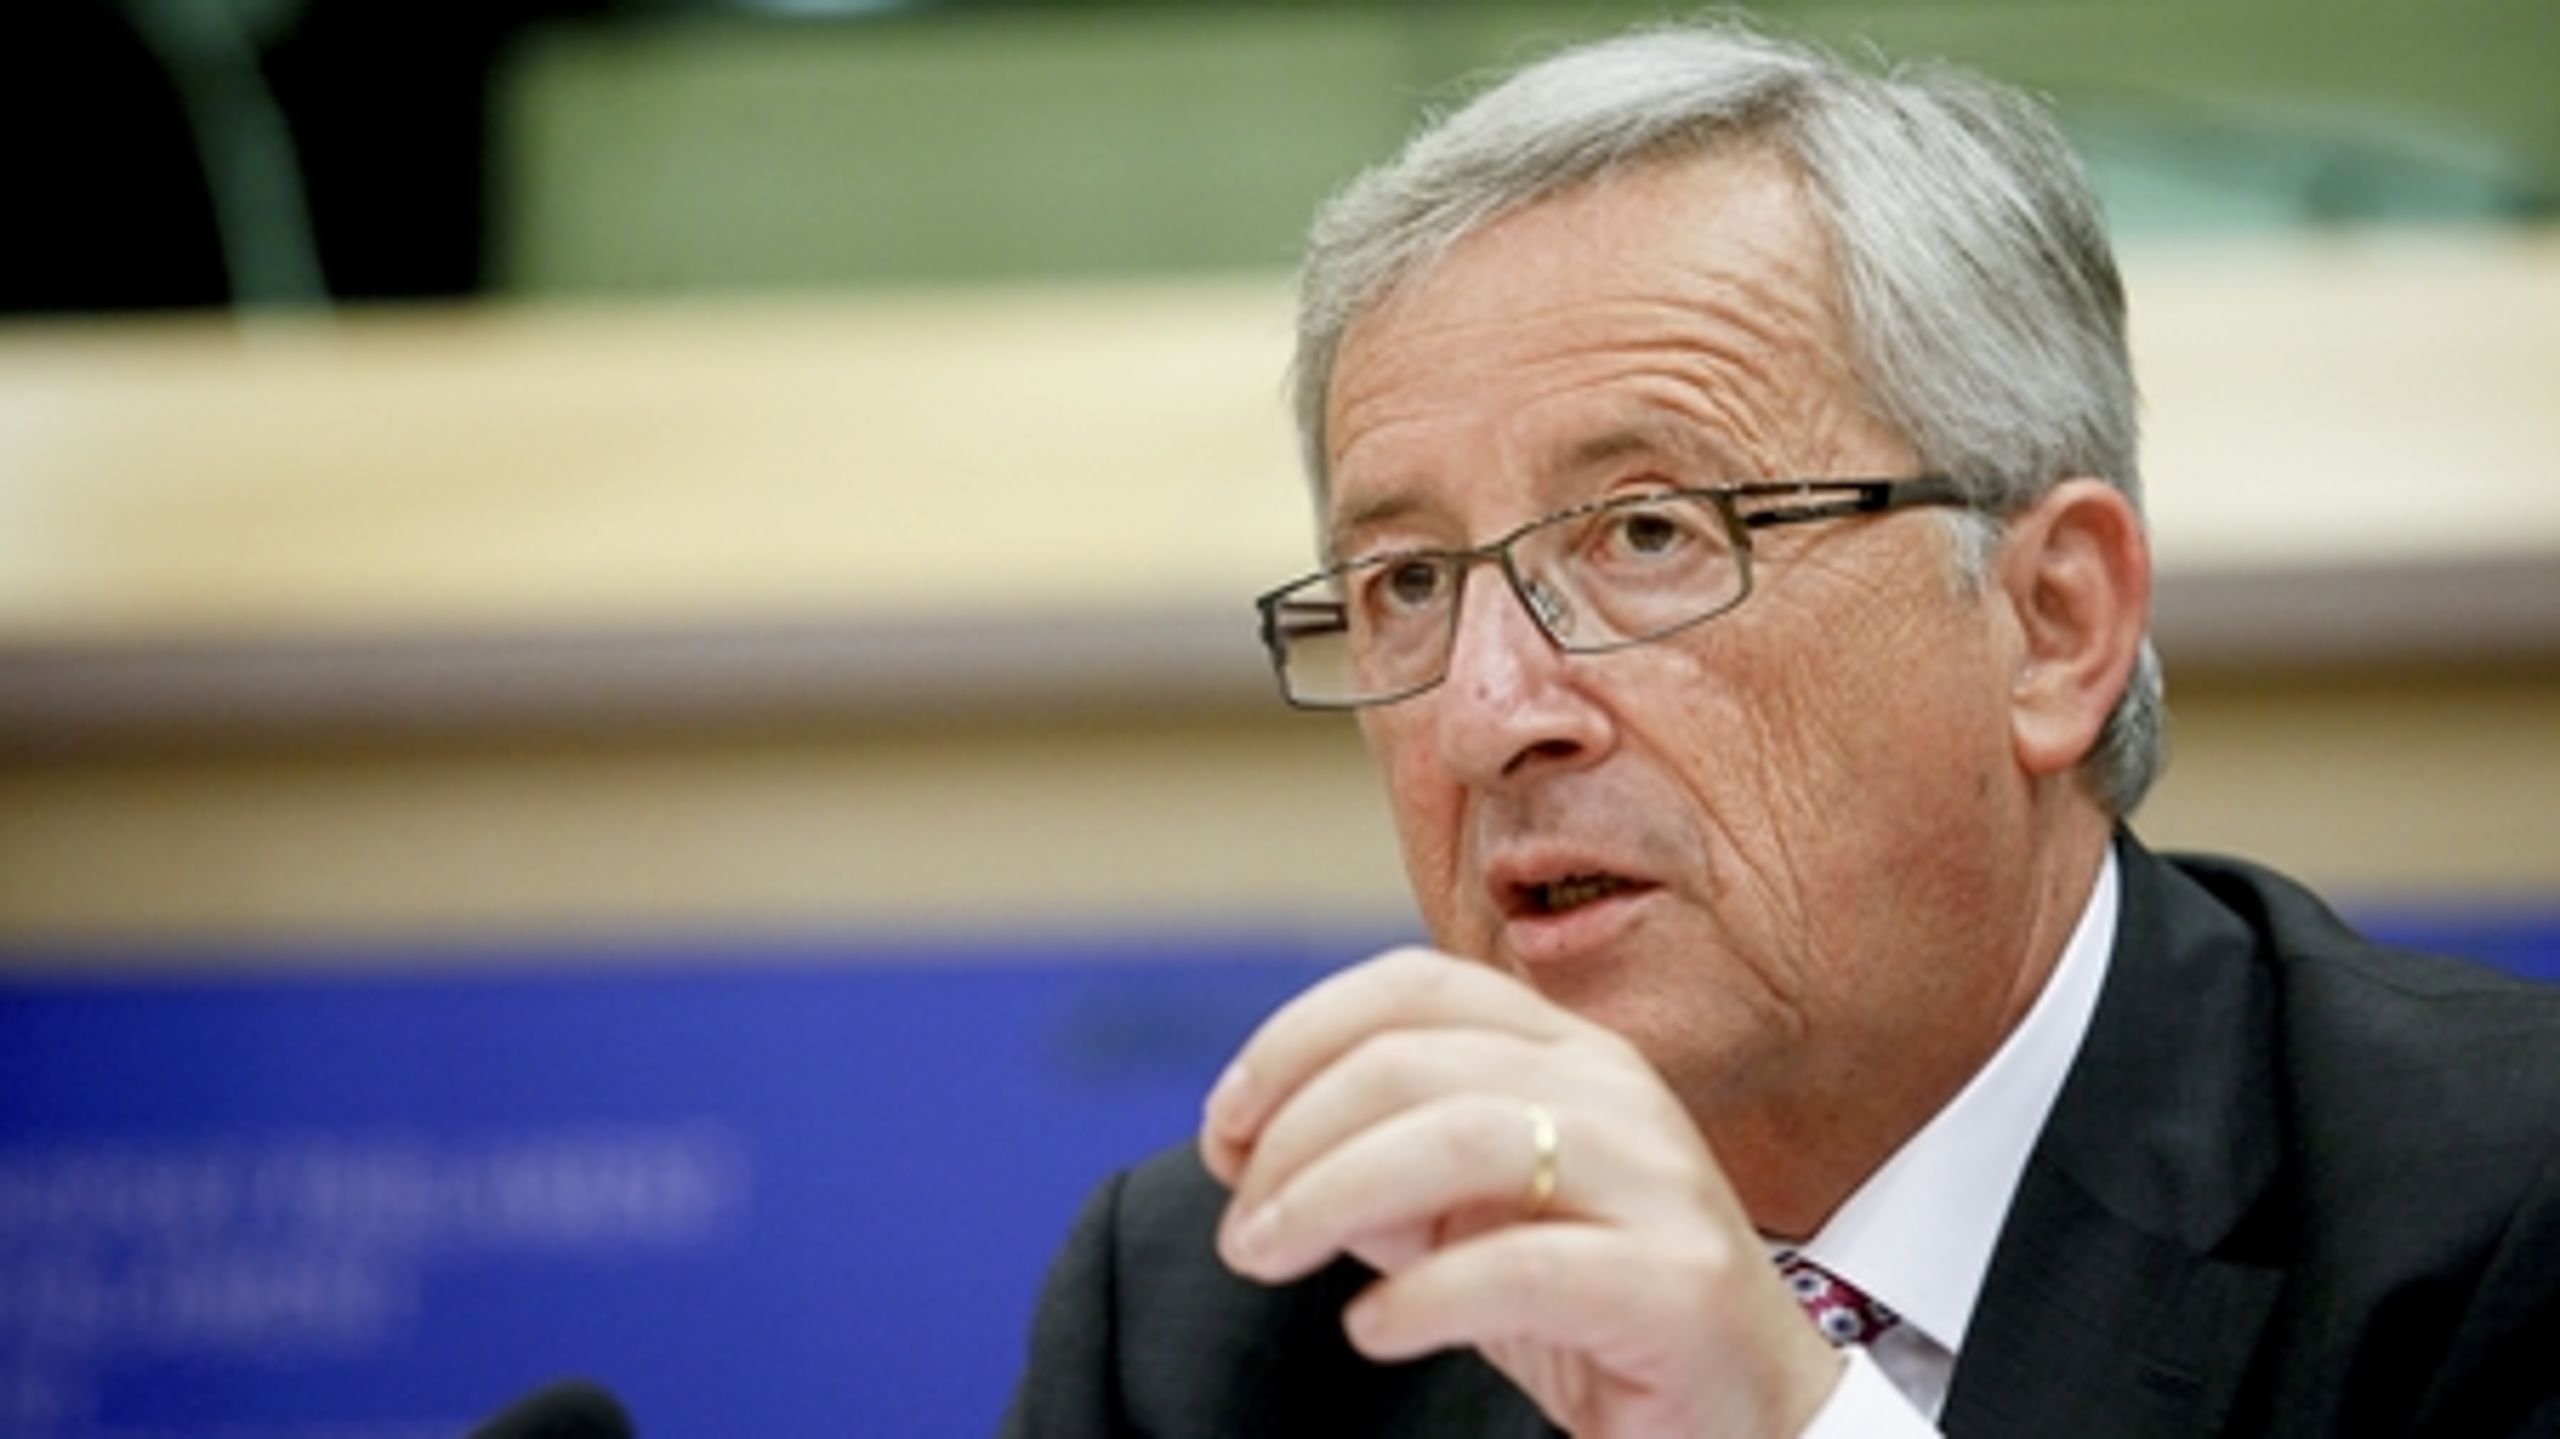 Jean-Claude Juncker er tidligere premierminister i Luxembourg gennem 18 år. Han har desuden været formand for Eurogruppen, der samler eurolandenes finansministre.